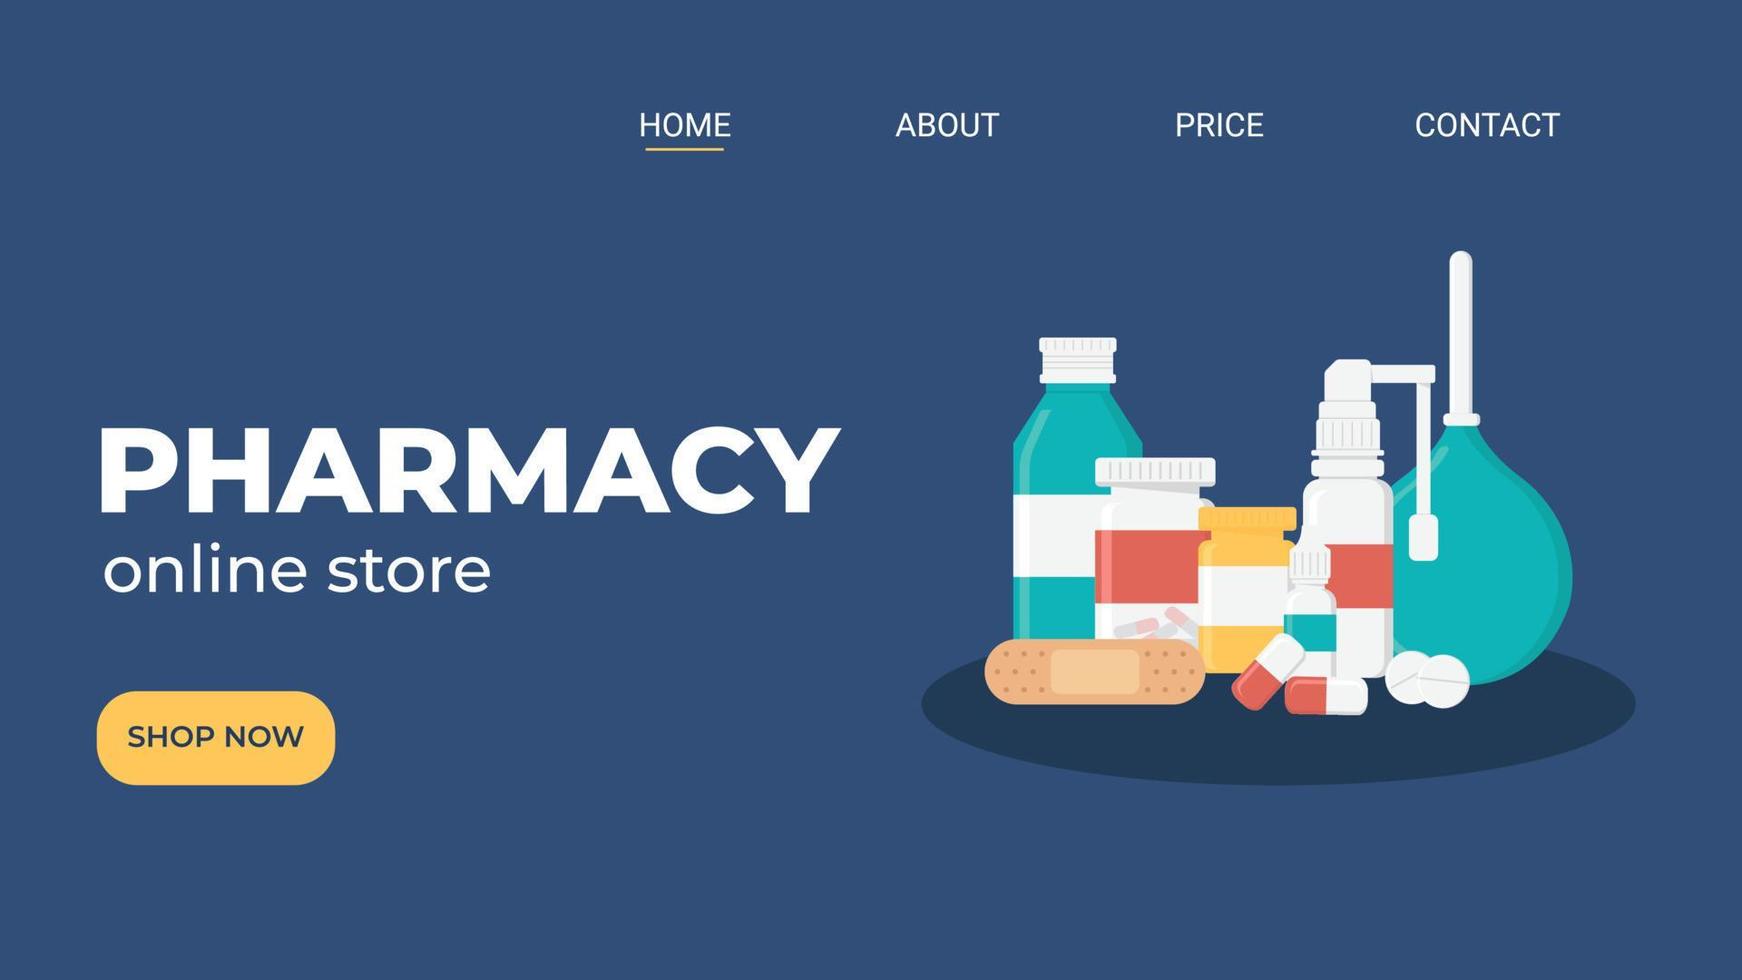 Online pharmacy website design concept. Flat modern medicine vector illustration for website design, banner, landing page.